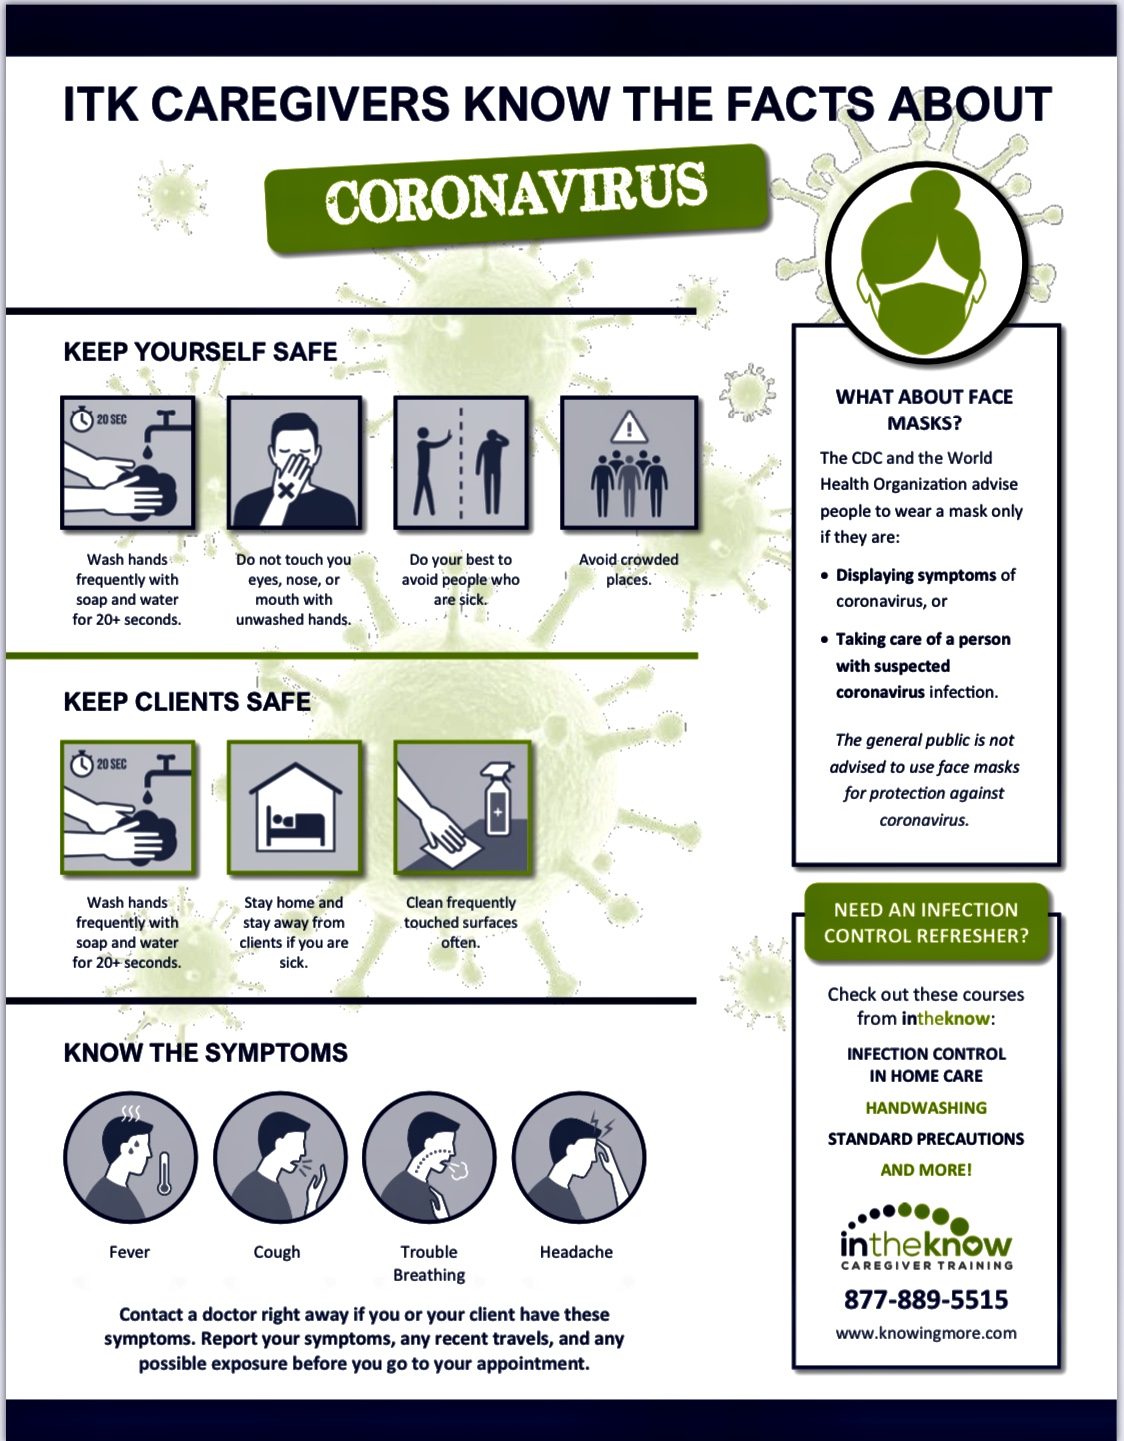 coronavirusbanner